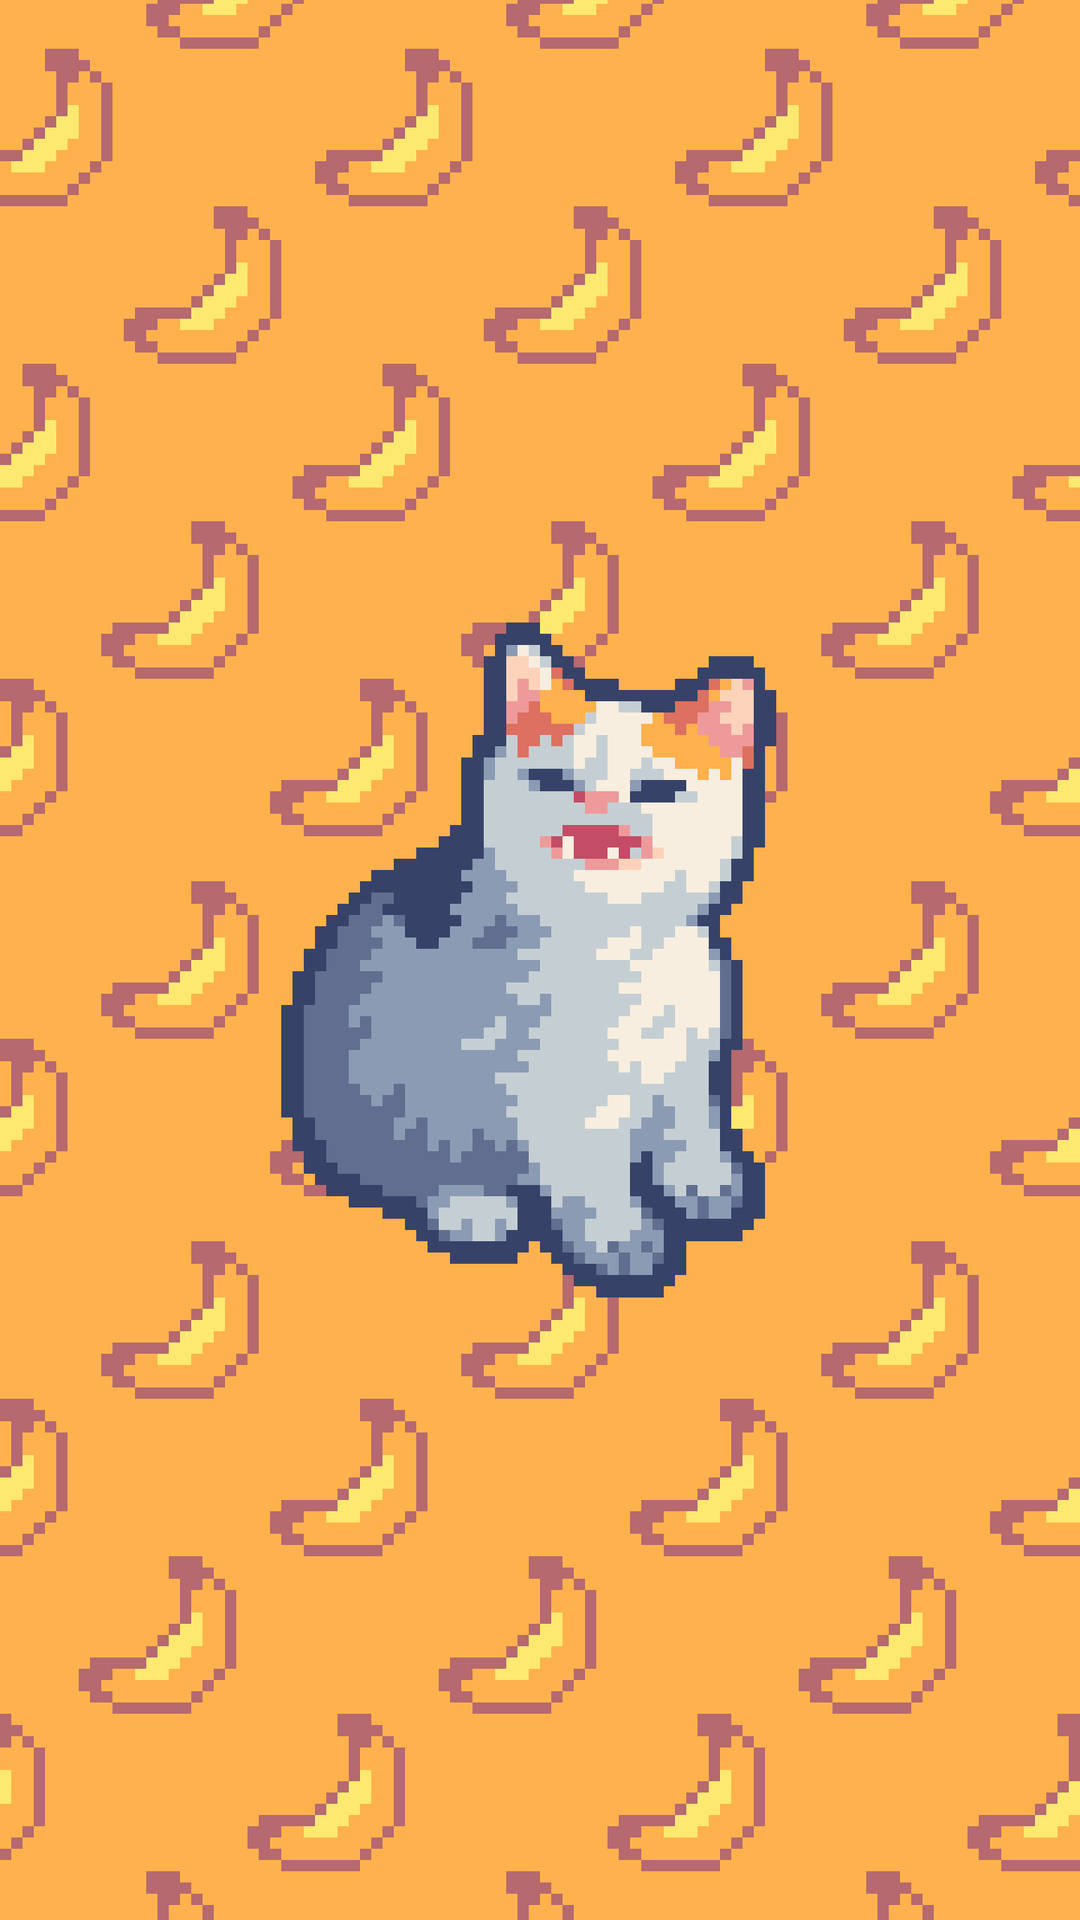 Cat And Banana Aesthetic Pixel Art Hd Wallpaper